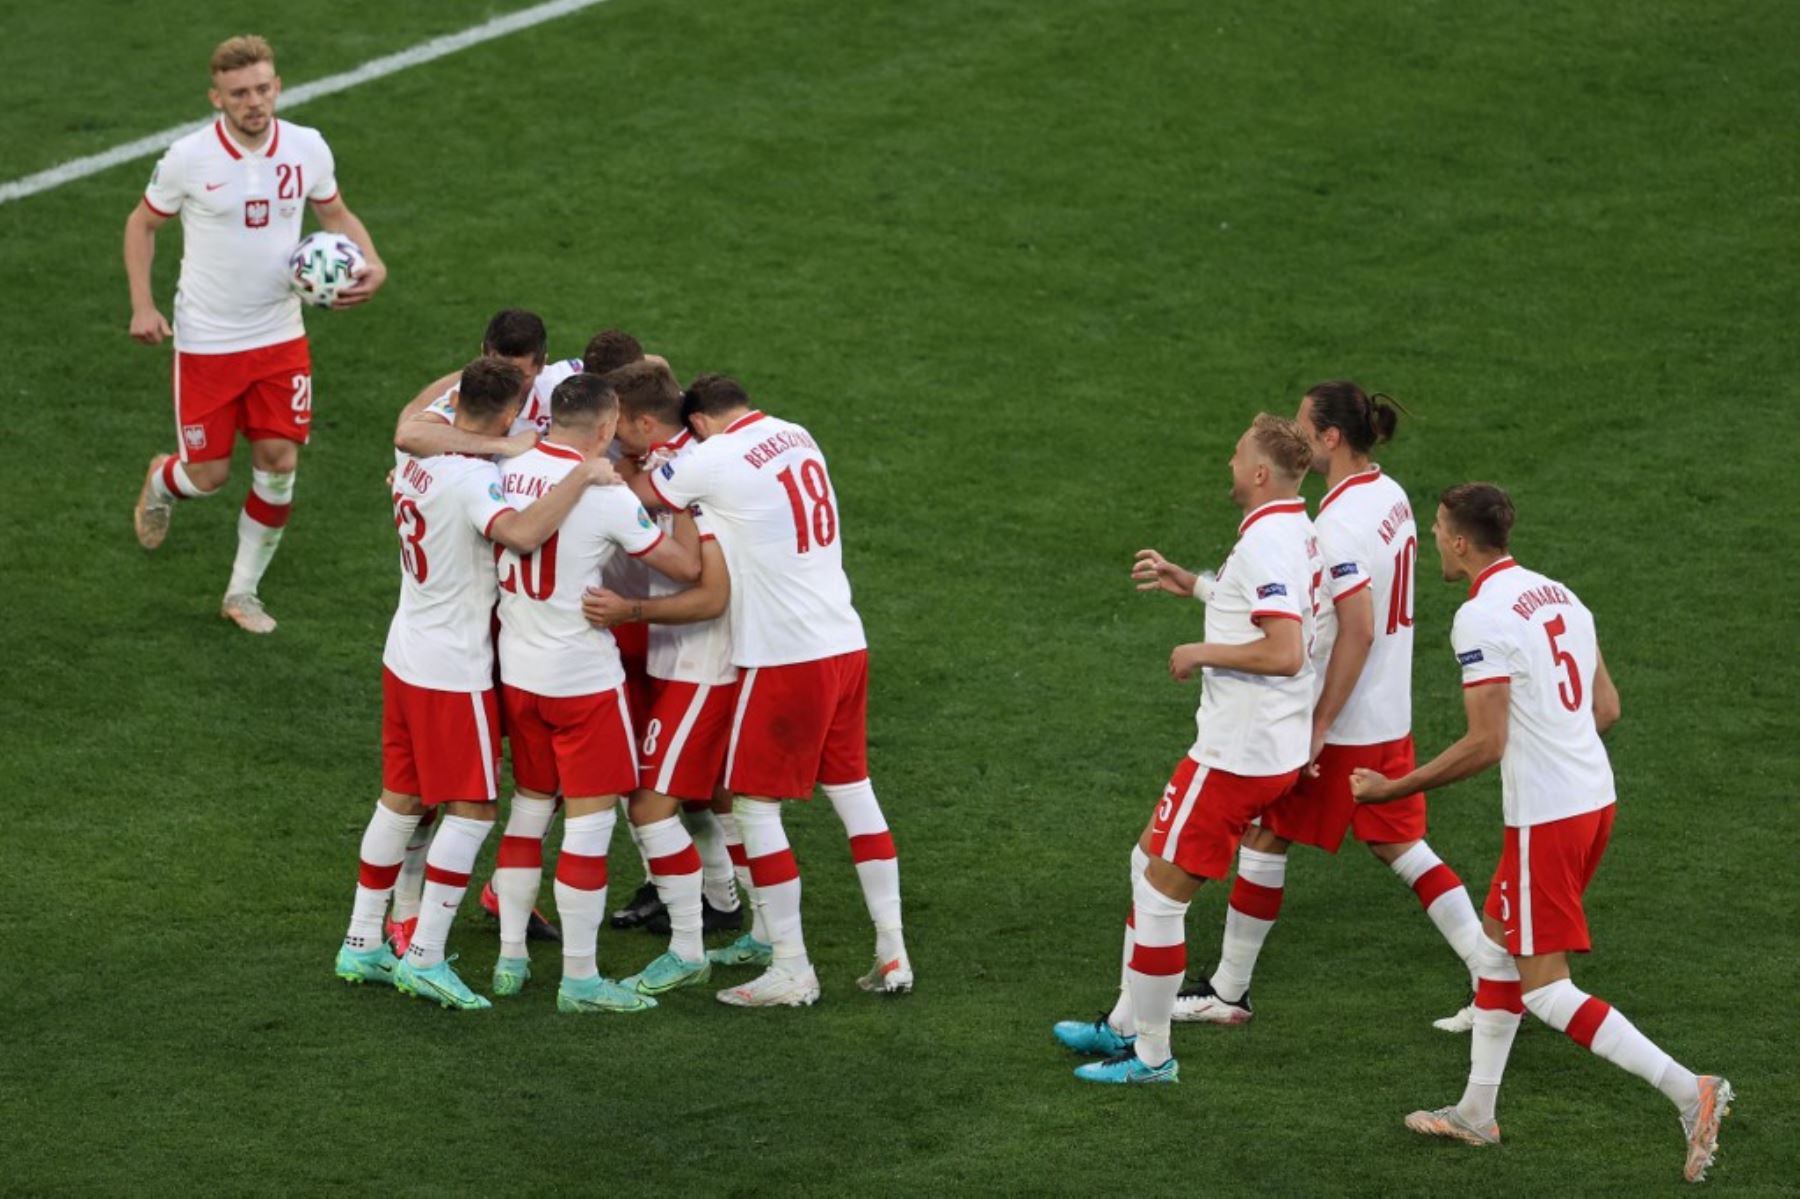 Los jugadores de Polonia celebran el primer gol del equipo durante el partido de fútbol del Grupo E de la UEFA EURO 2020 entre Polonia y Eslovaquia en el estadio de San Petersburgo en San Petersburgo el 14 de junio de 2021. Foto: AFP